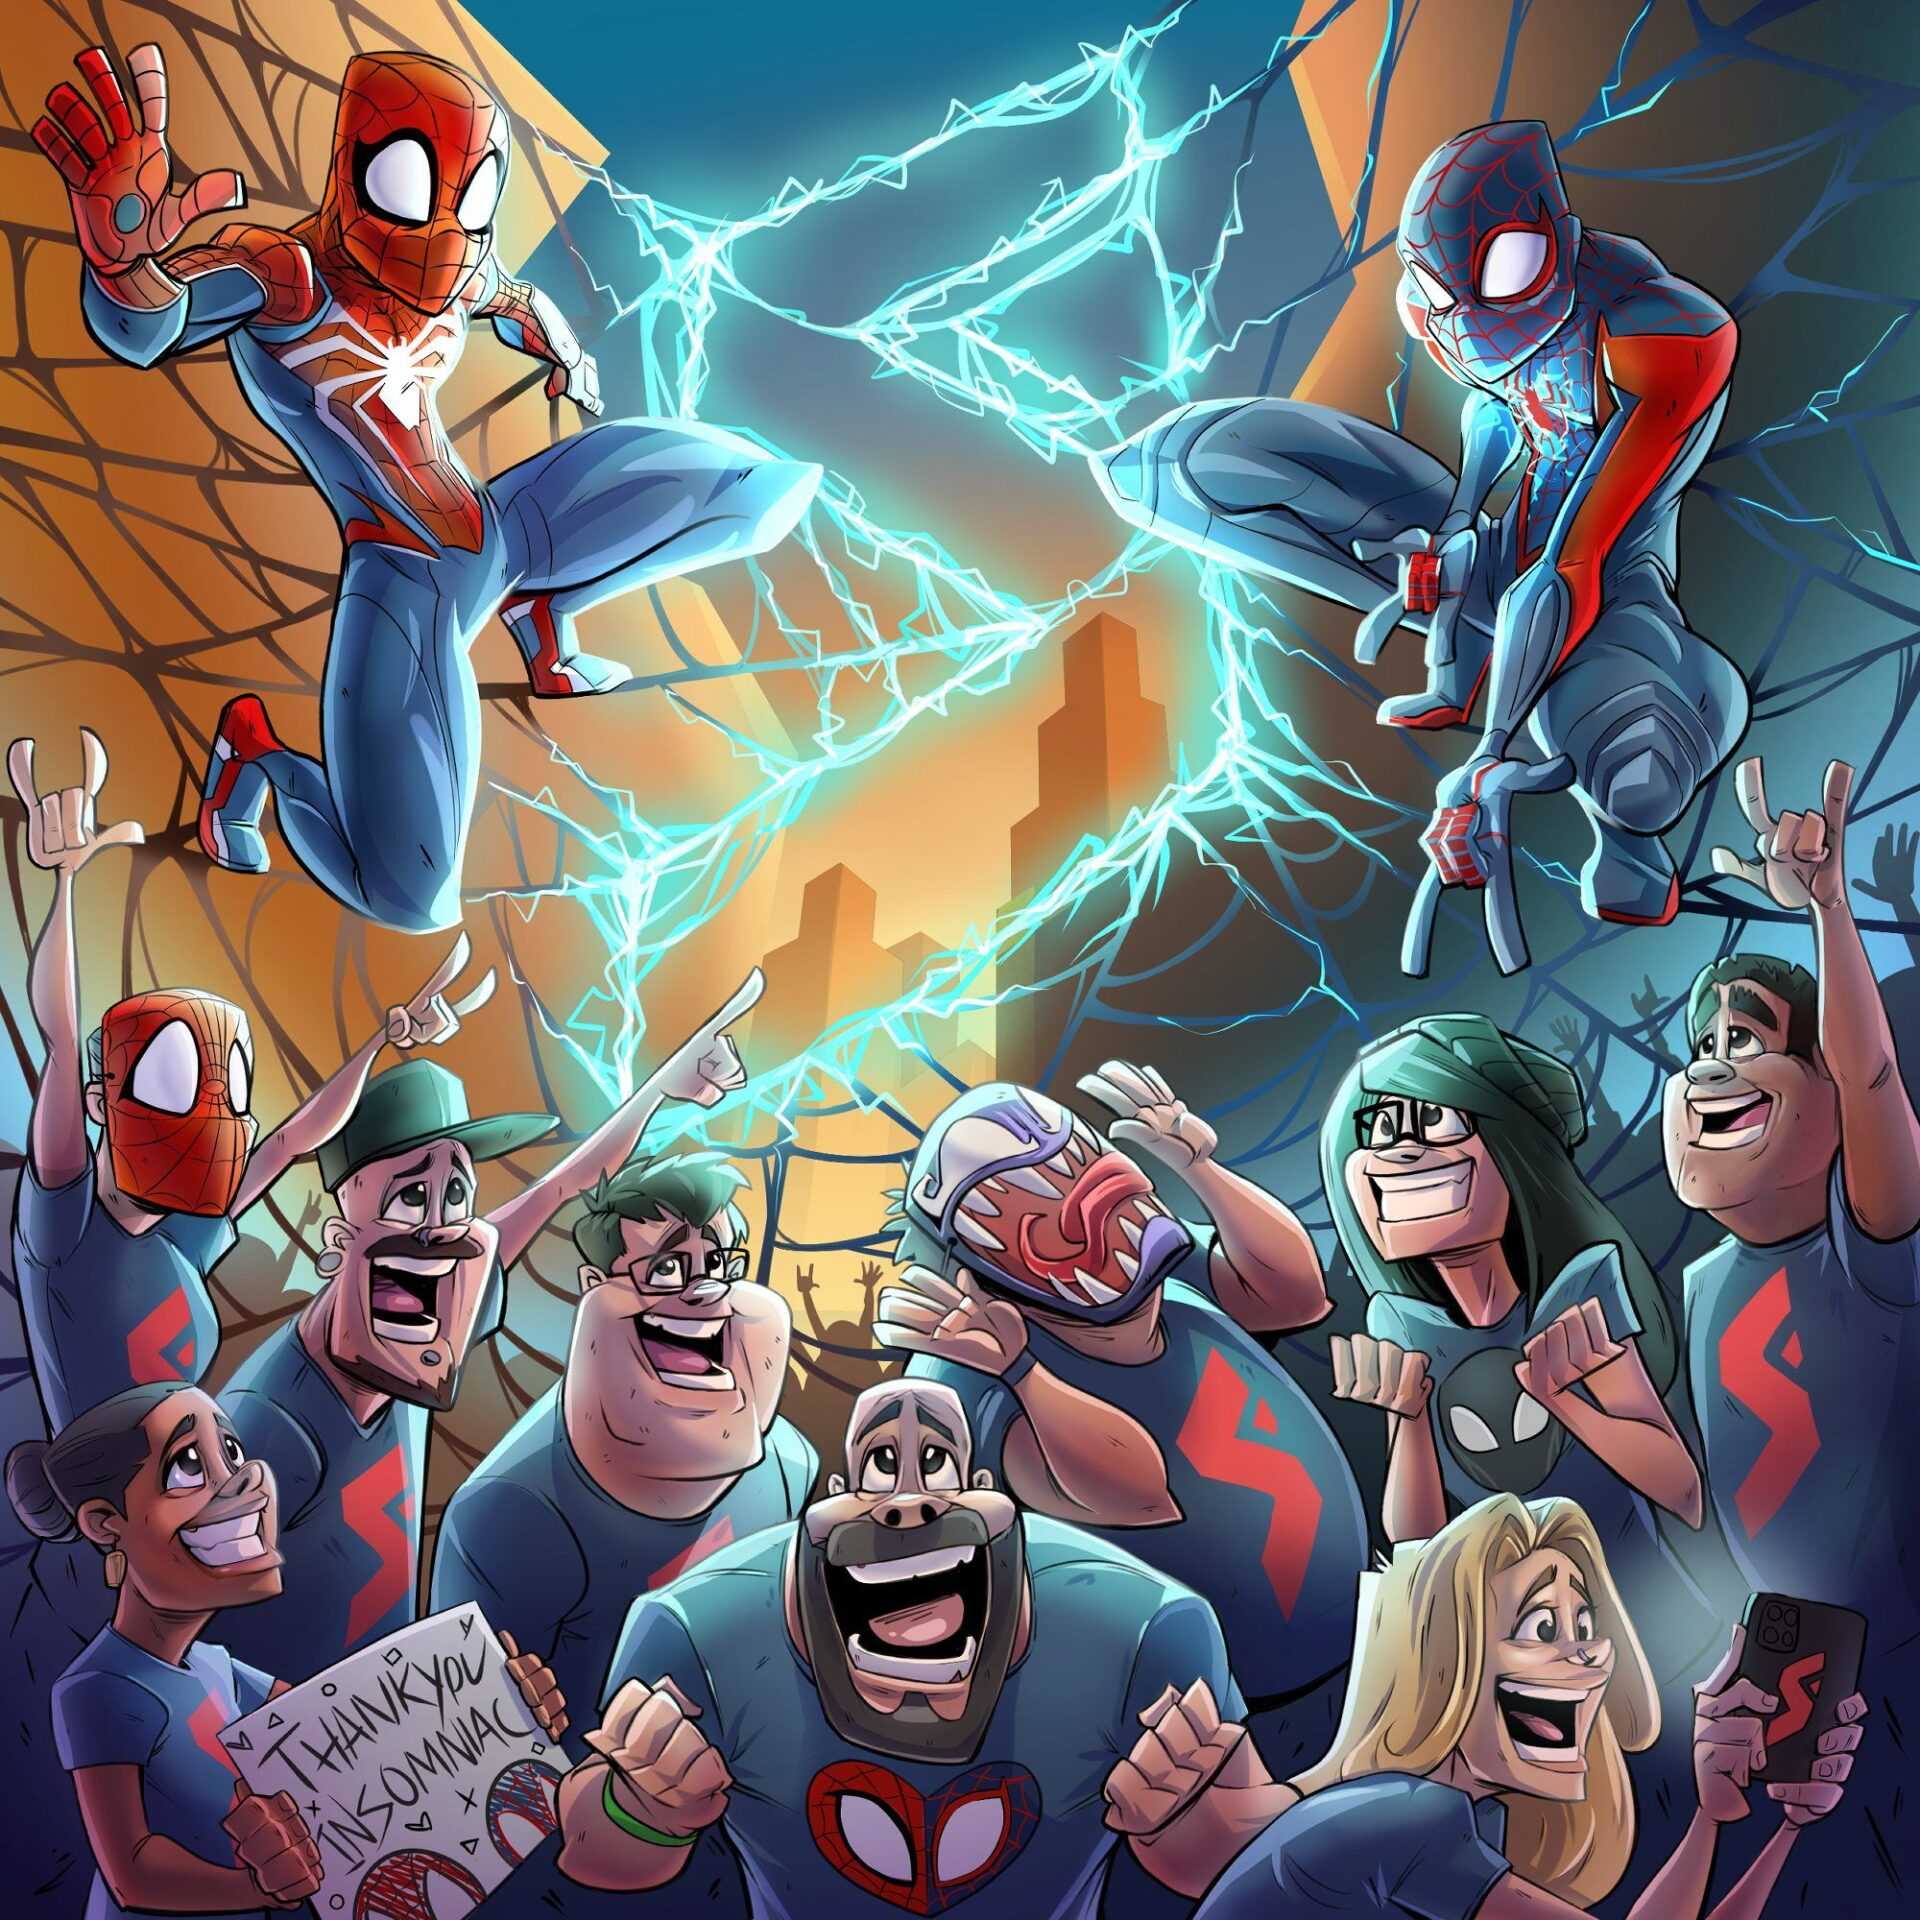 Элой и Кратос веселяться с Пауками: Студии Sony поделились артами в честь релиза Marvel's Spider-Man 2 |5